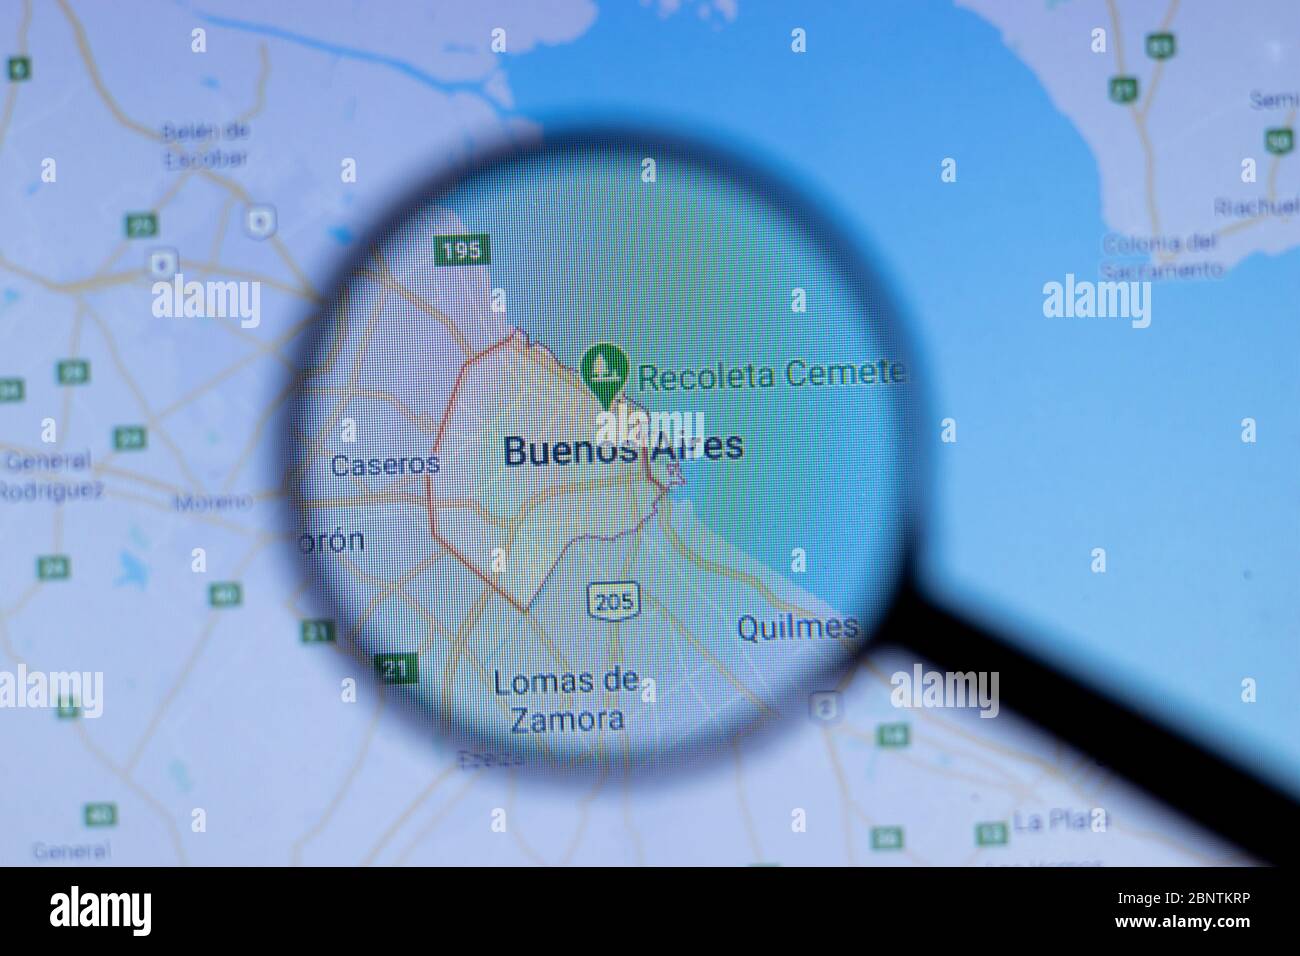 Los Angeles, California, EE.UU. - 1 de mayo de 2020: Ciudad de Buenos Aires Nombre de la ciudad con ubicación en el mapa de cerca, editorial ilustrativa Foto de stock